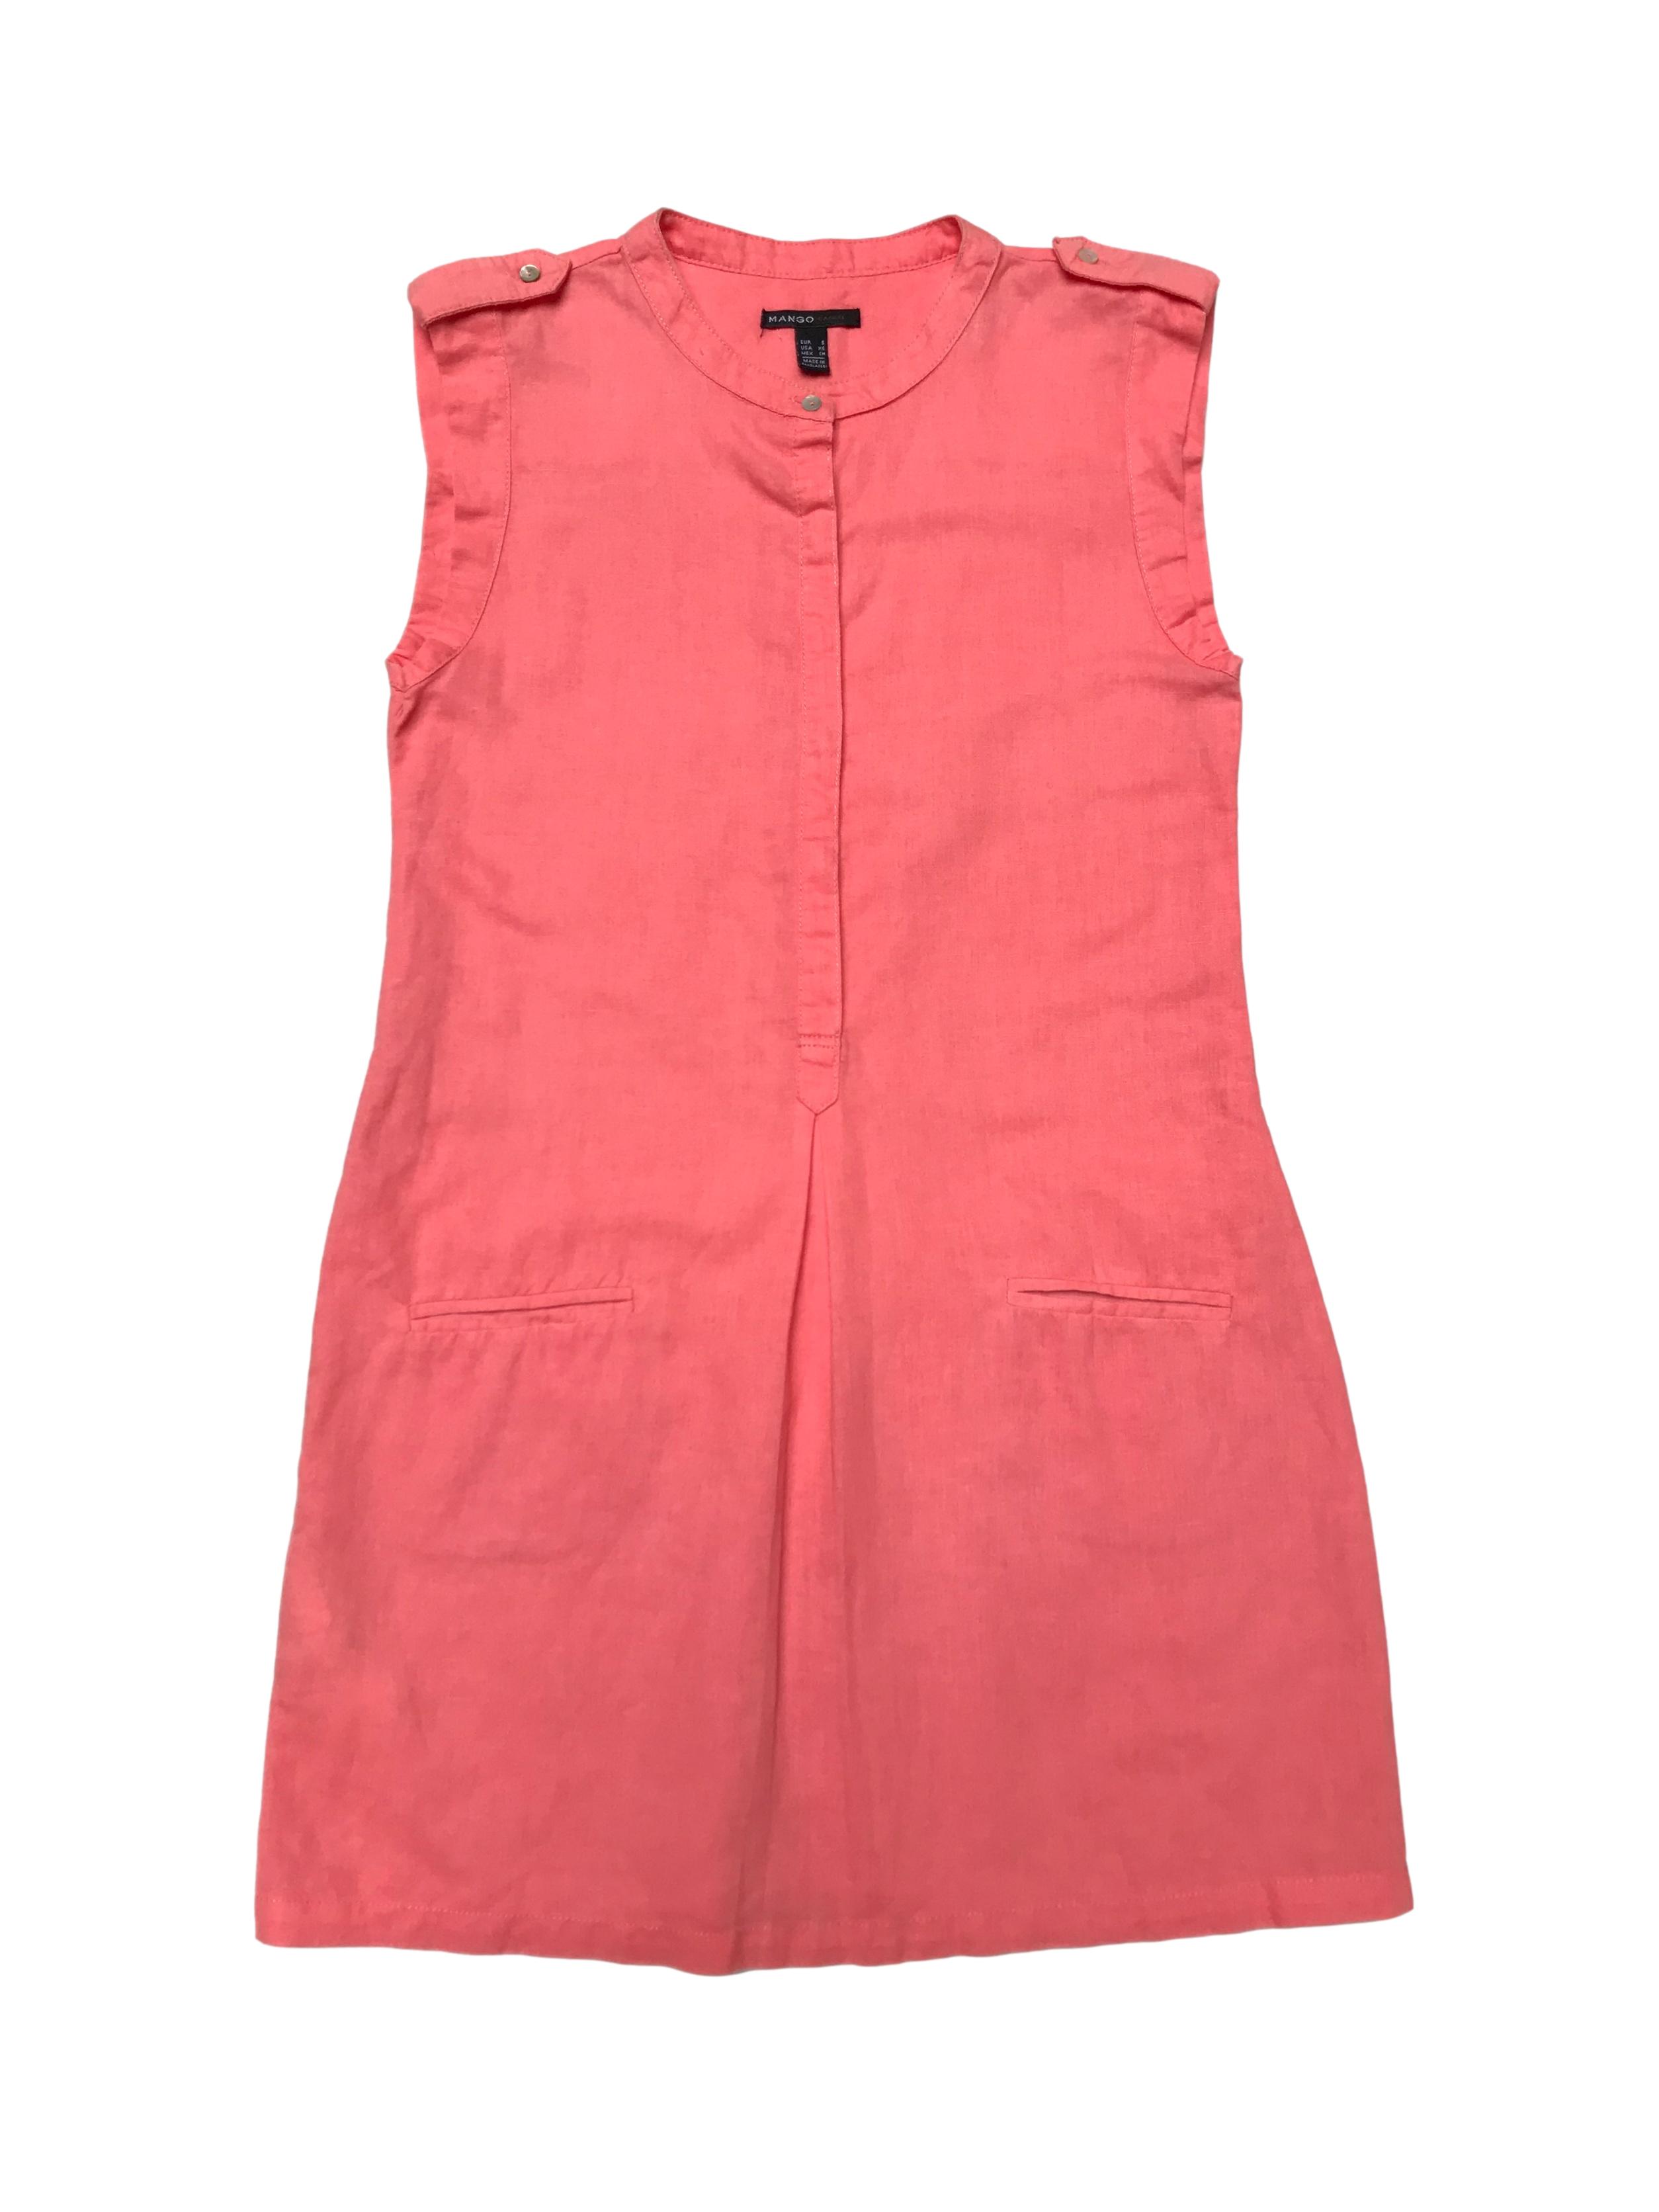 Vestido Mango 100% lino coral, botones hasta la cintura y bolsillos en la falda. Largo 85cm